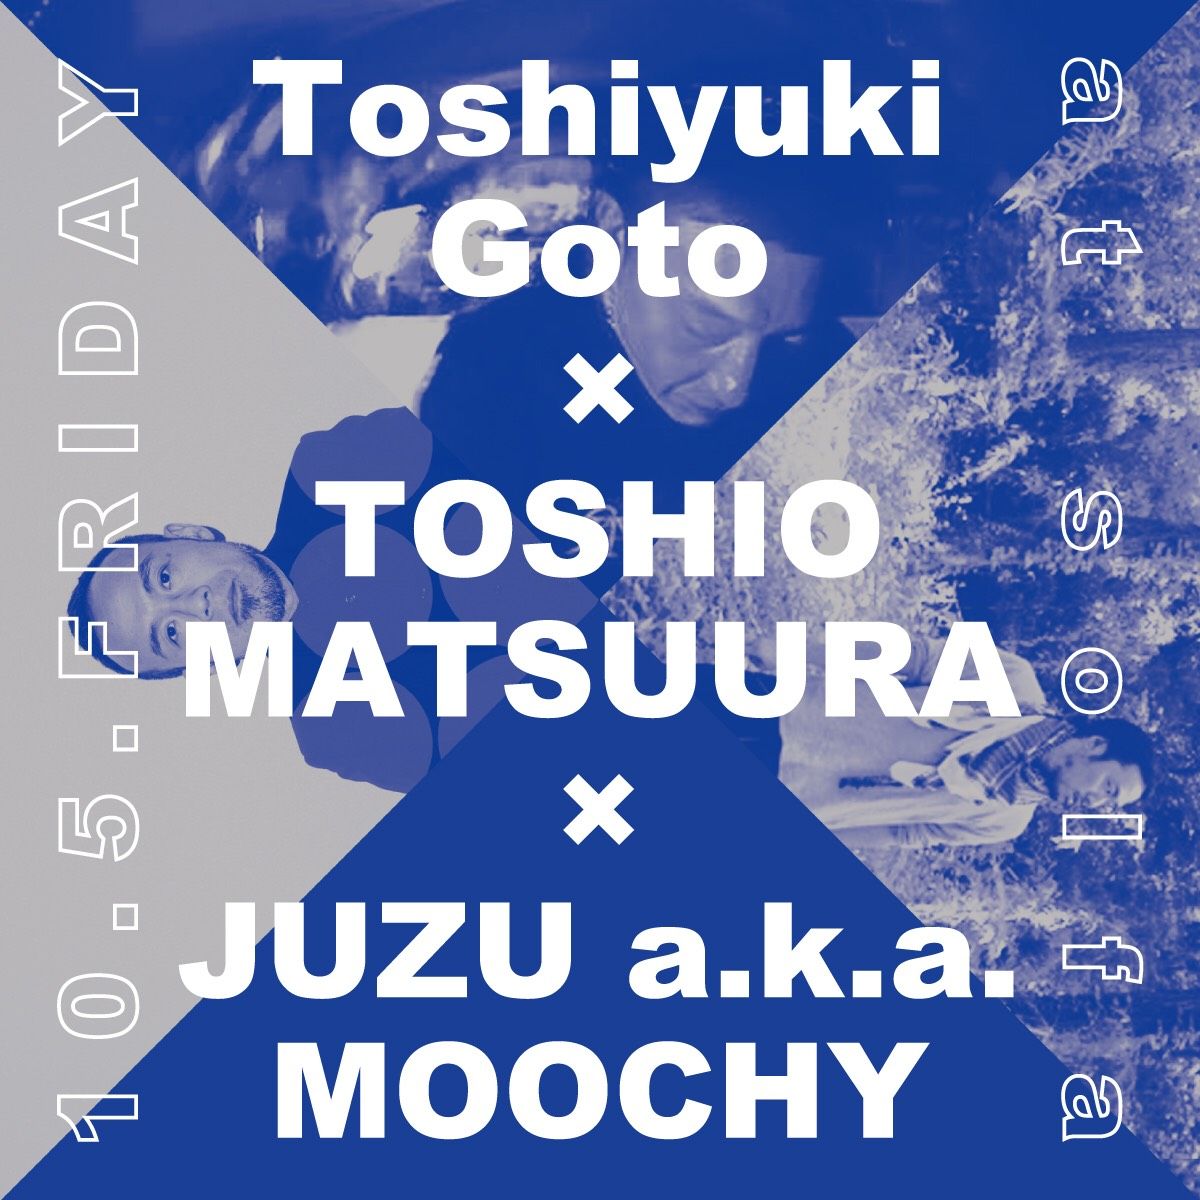 Toshiyuki Goto × TOSHIO MATSUURA × JUZU a.k.a. MOOCHY